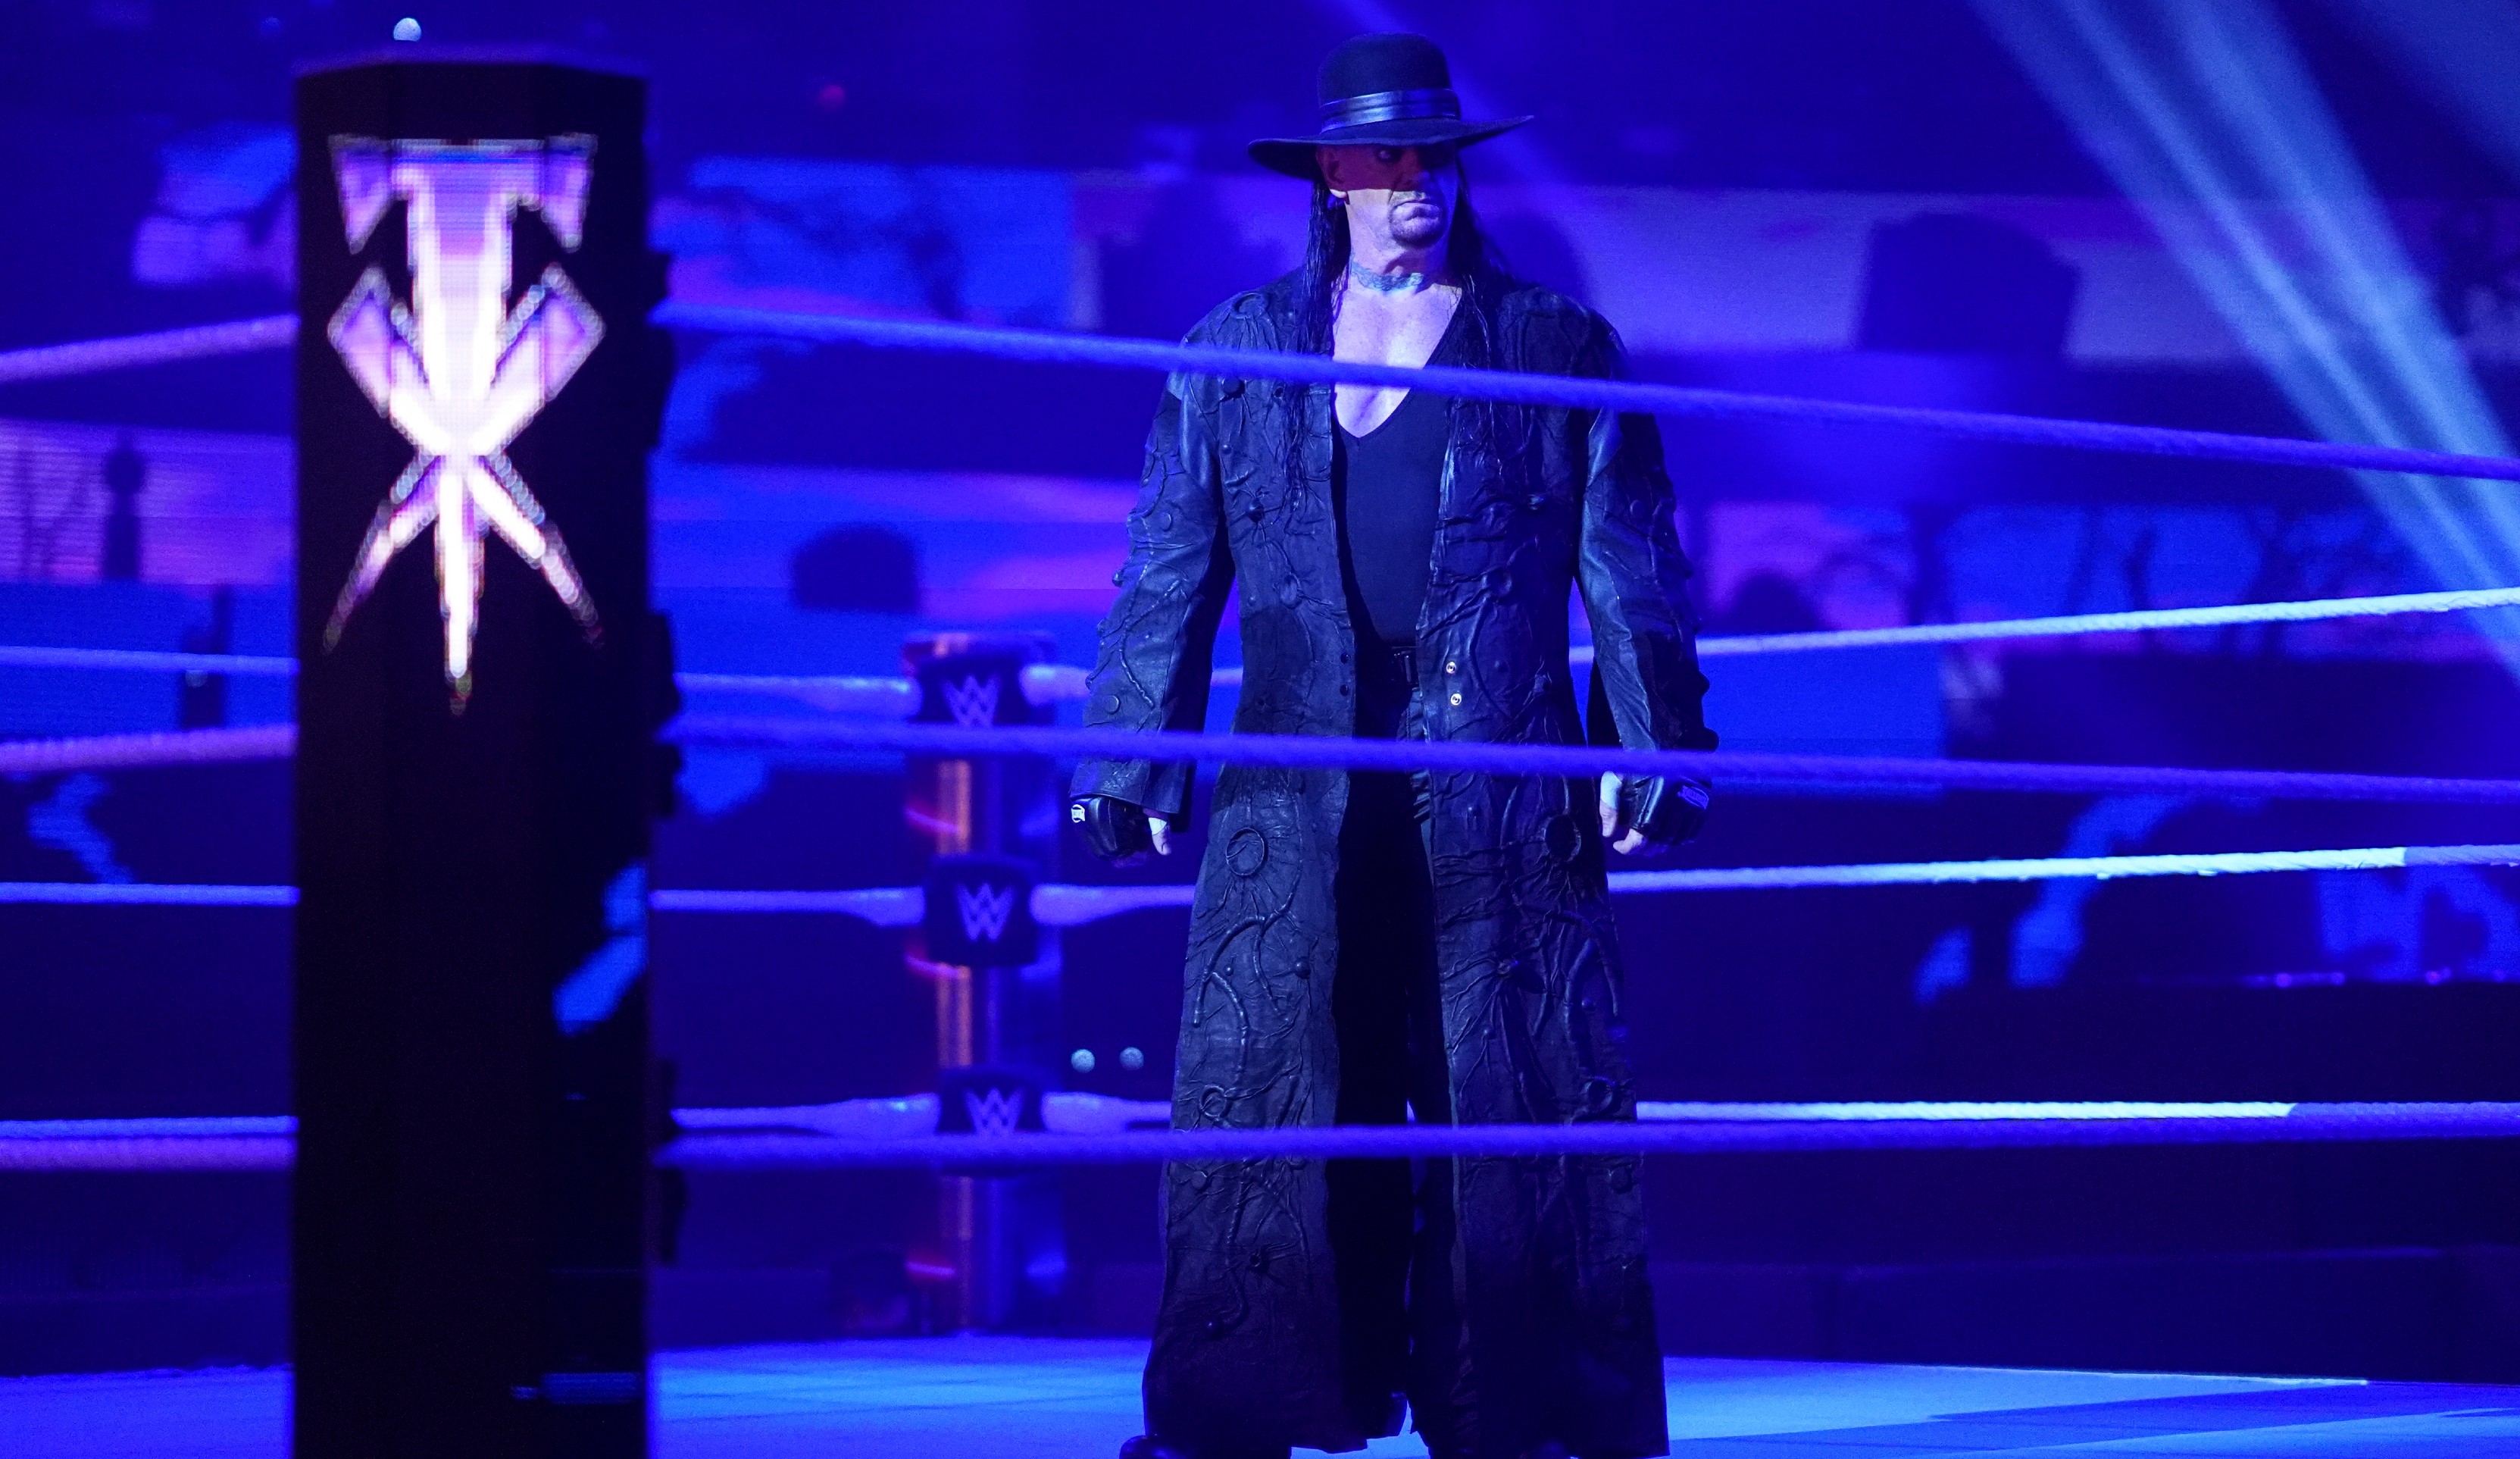 Nun fand im Rahmen der Survivor Series aber der endgültige Abschied der Wrestling-Legende statt. Der Undertaker musste nicht kämpfen, er ließ sich einfach nur feiern.